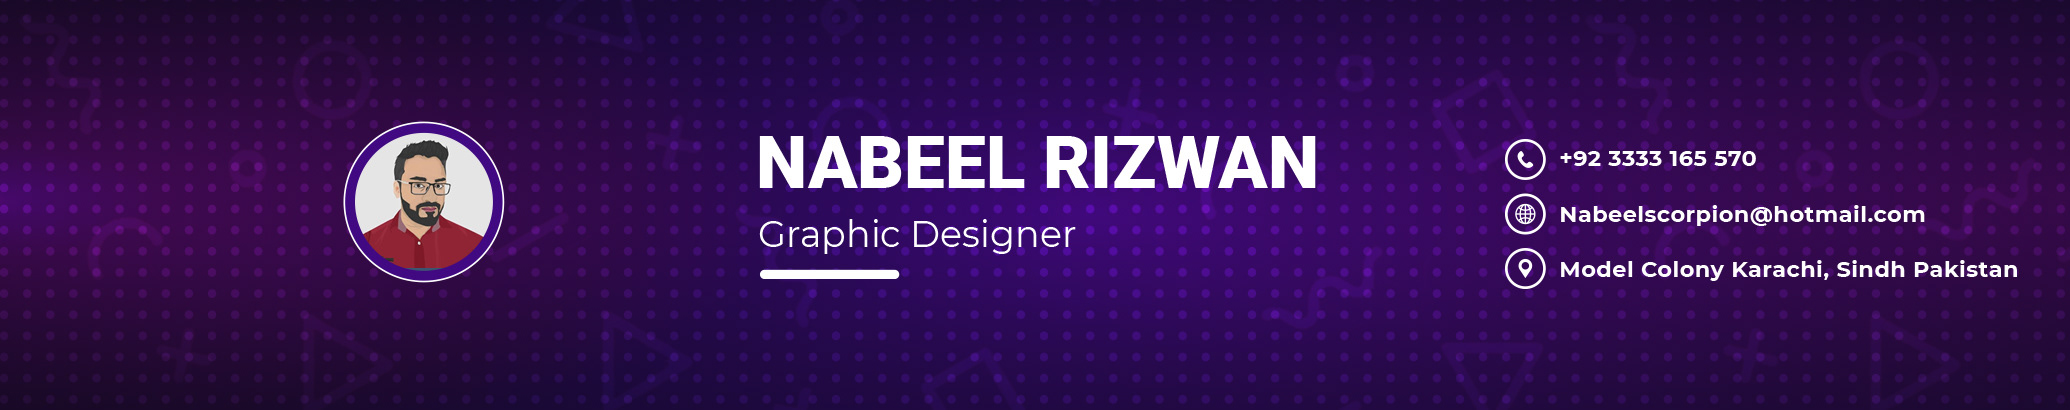 Nabeel Rizwans profilbanner